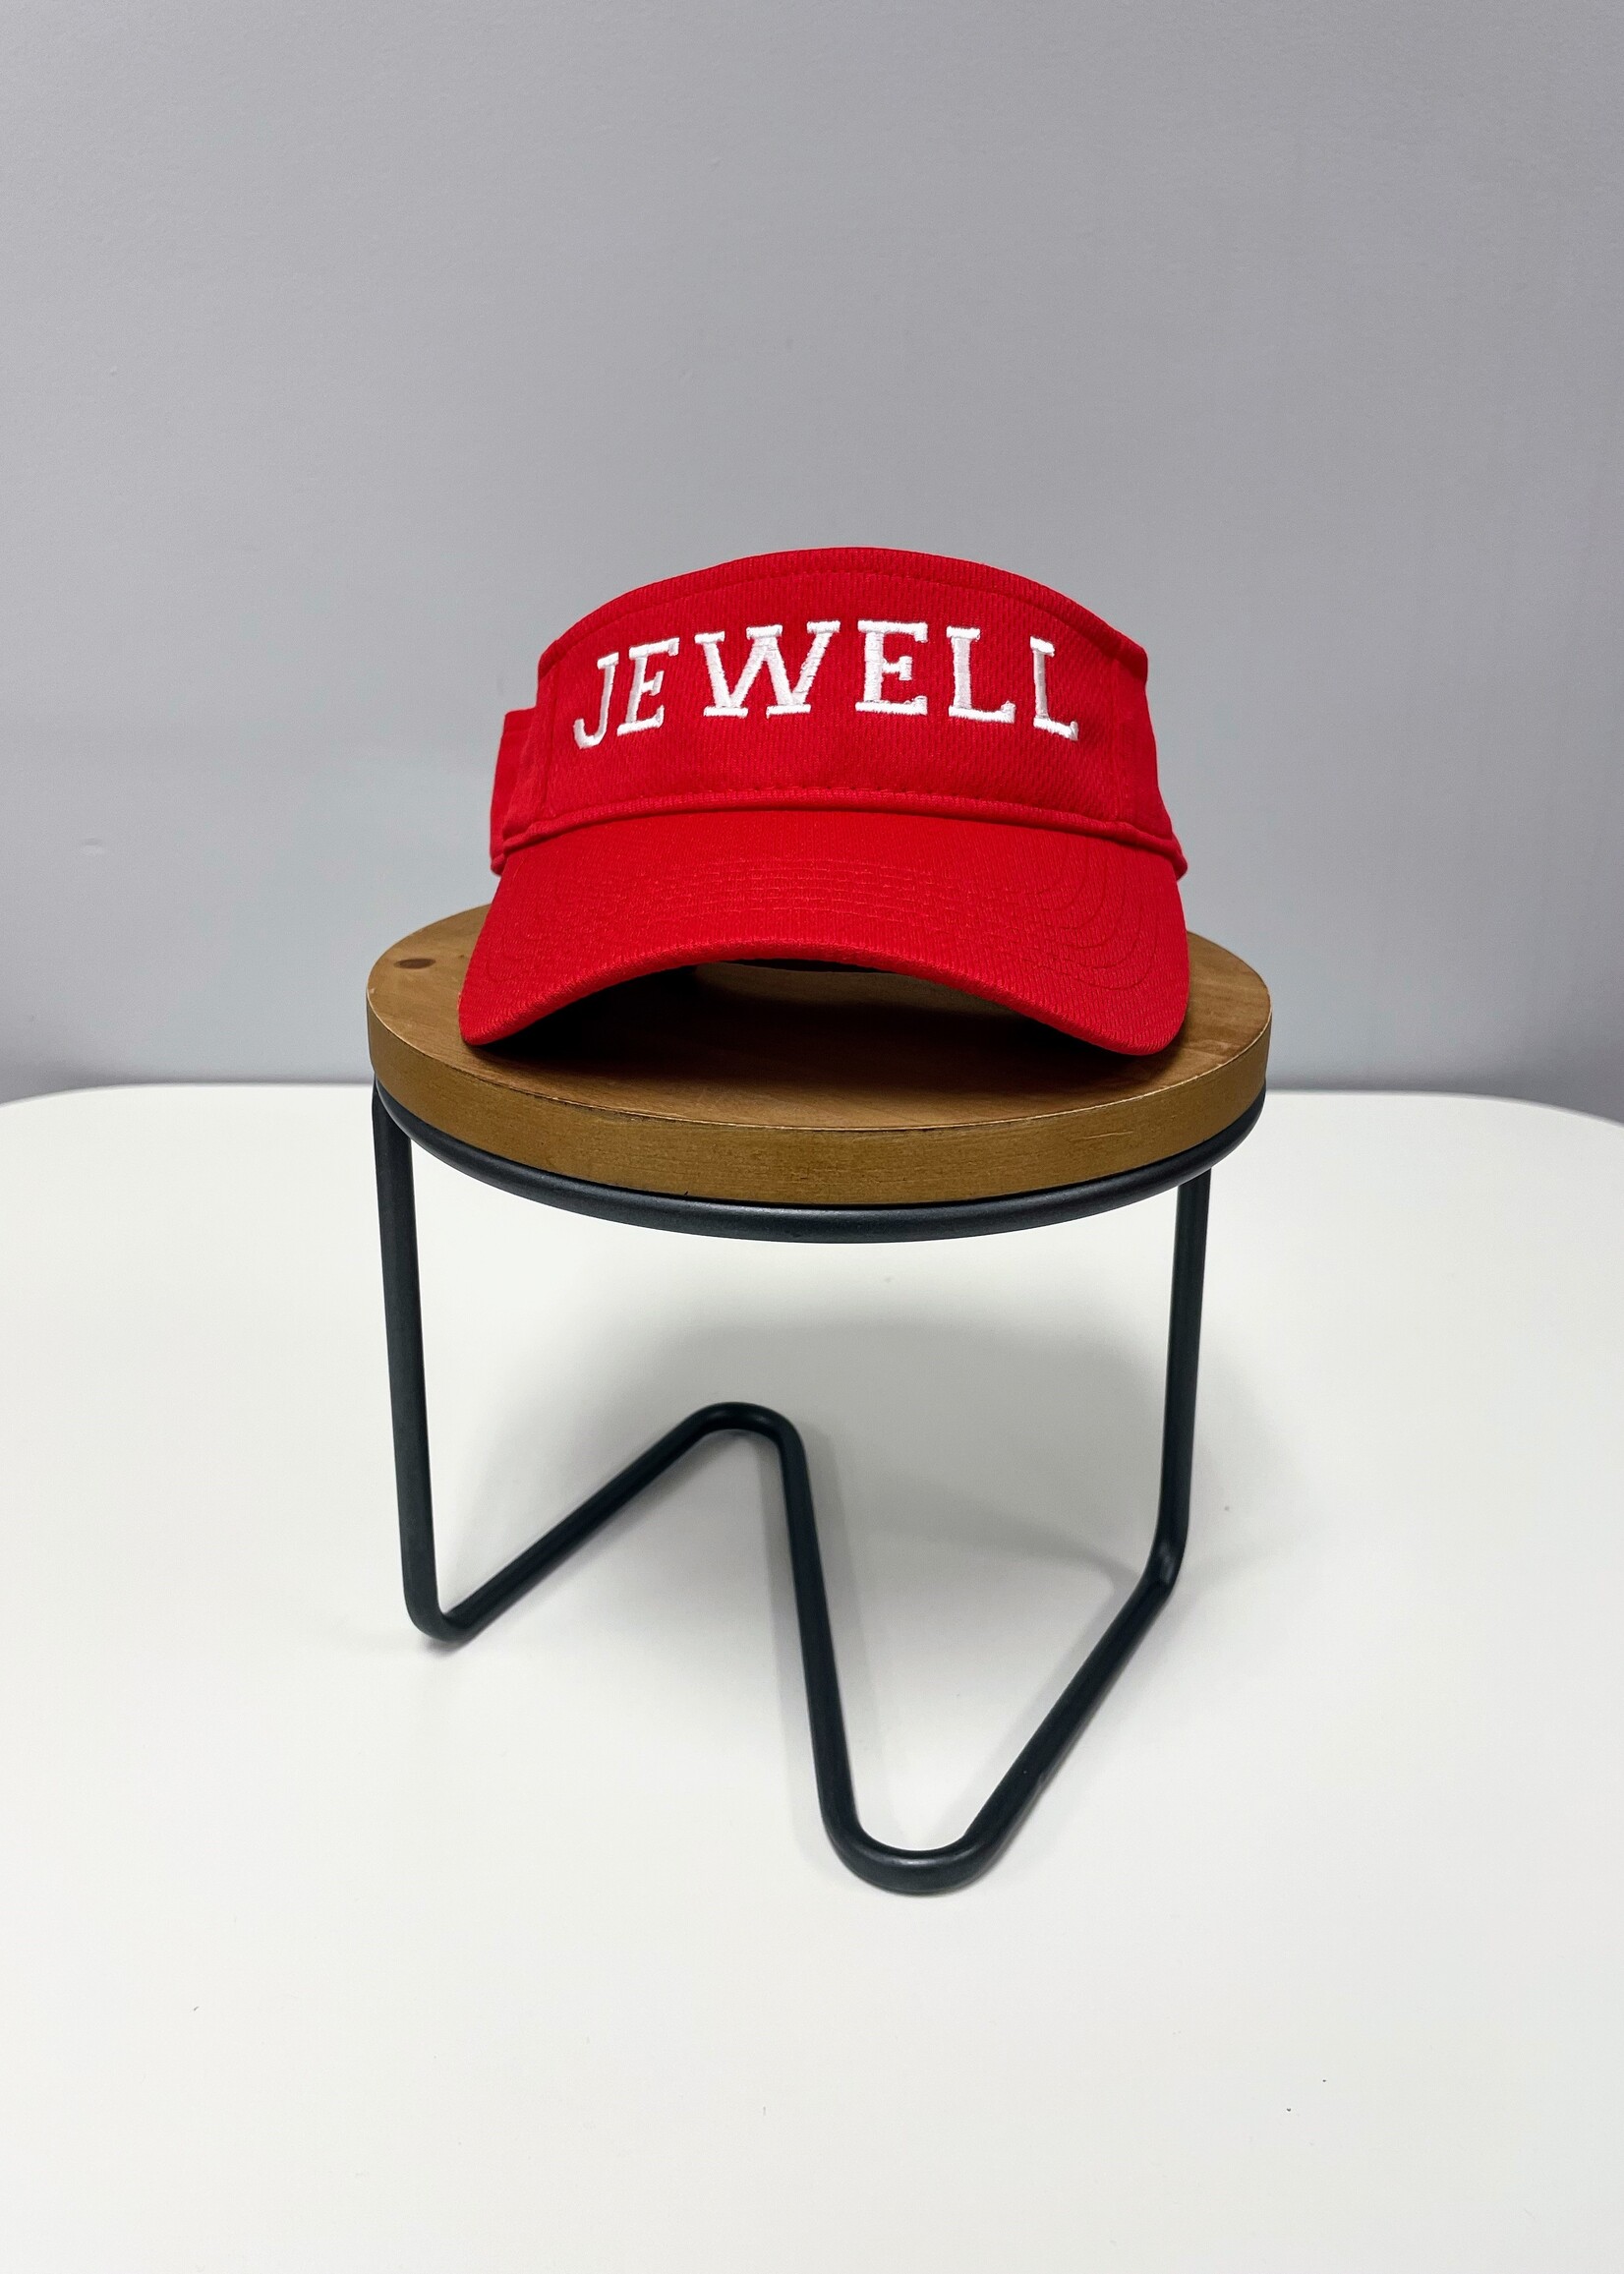 Jewell visor